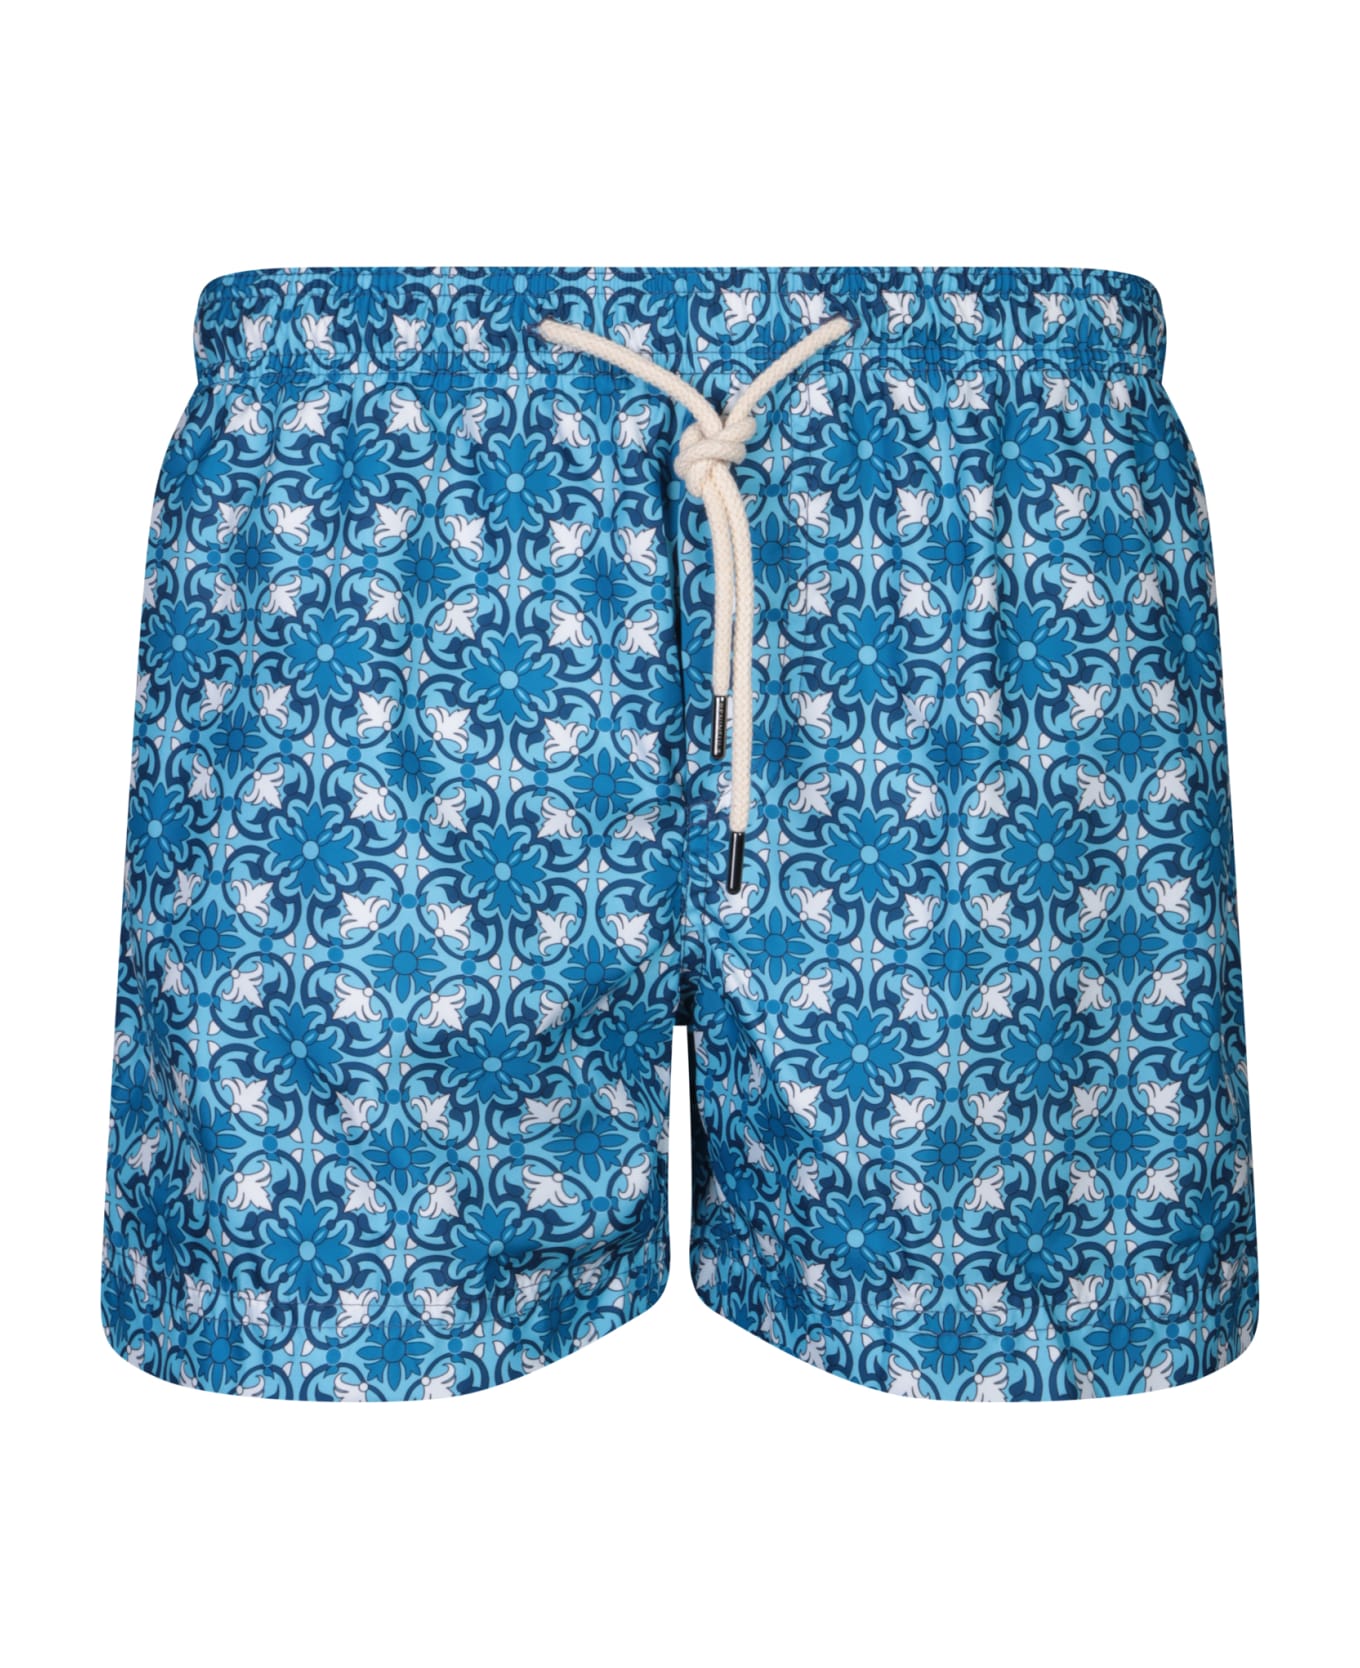 Peninsula Swimwear Patterned Blue Boxer Swim Shorts By Peninsula - Blue